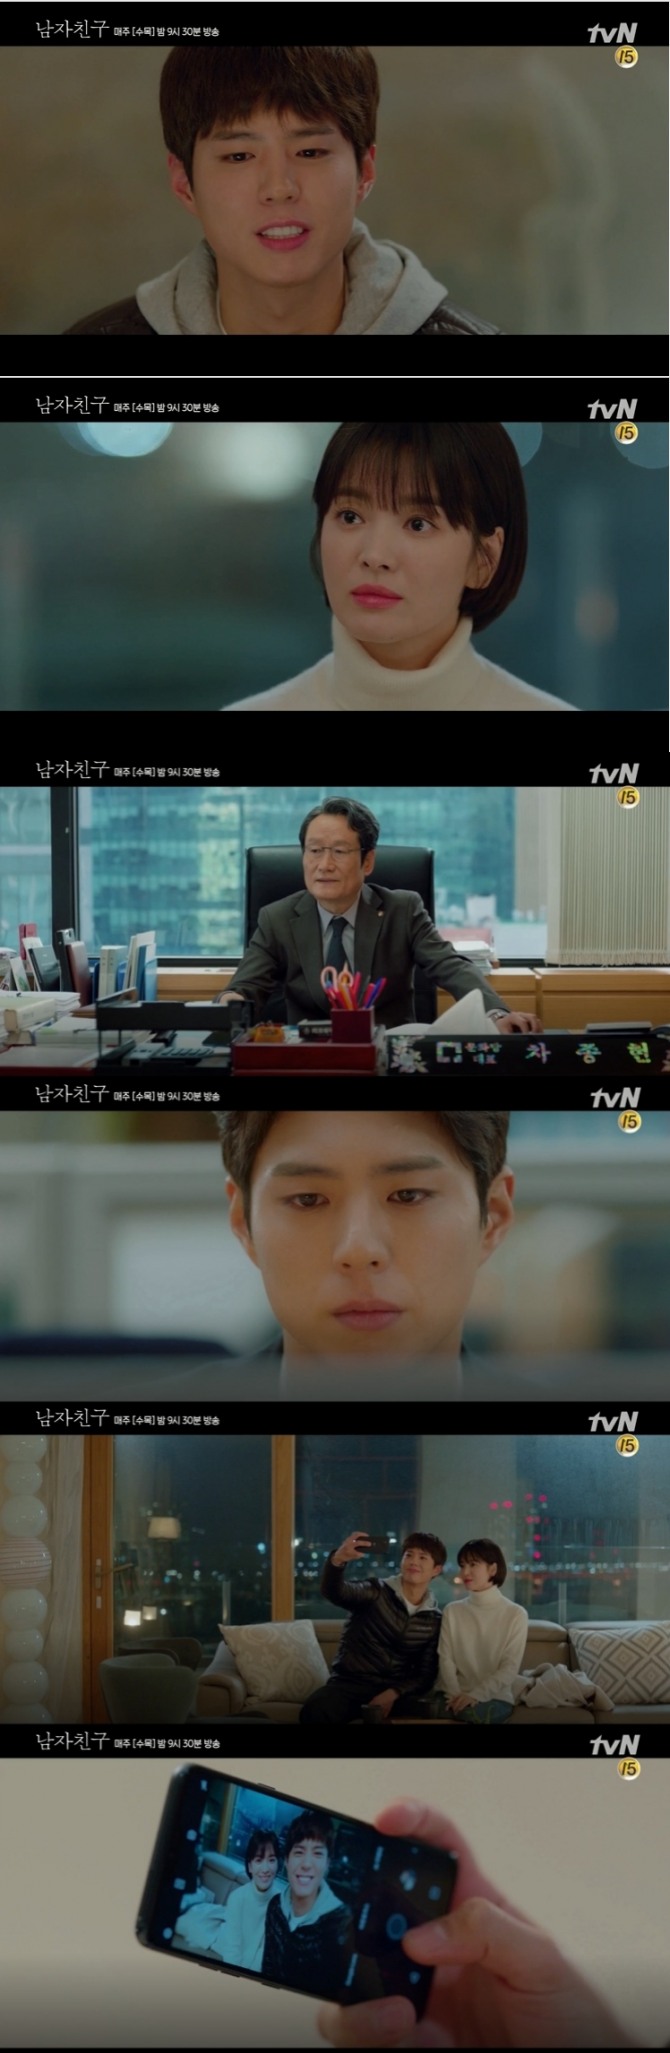 19일 방송되는 tvN 수목드라마 '남자친구'(극본 유영아, 연출 박신우) 7회에서는 차수현(송혜교 분)이 김진혁(박보검 분)을 집으로 초대해 집순이 데이트를 즐기며 한걸음 더 다가오기 시작한다.사진=tvN 영상 캡처